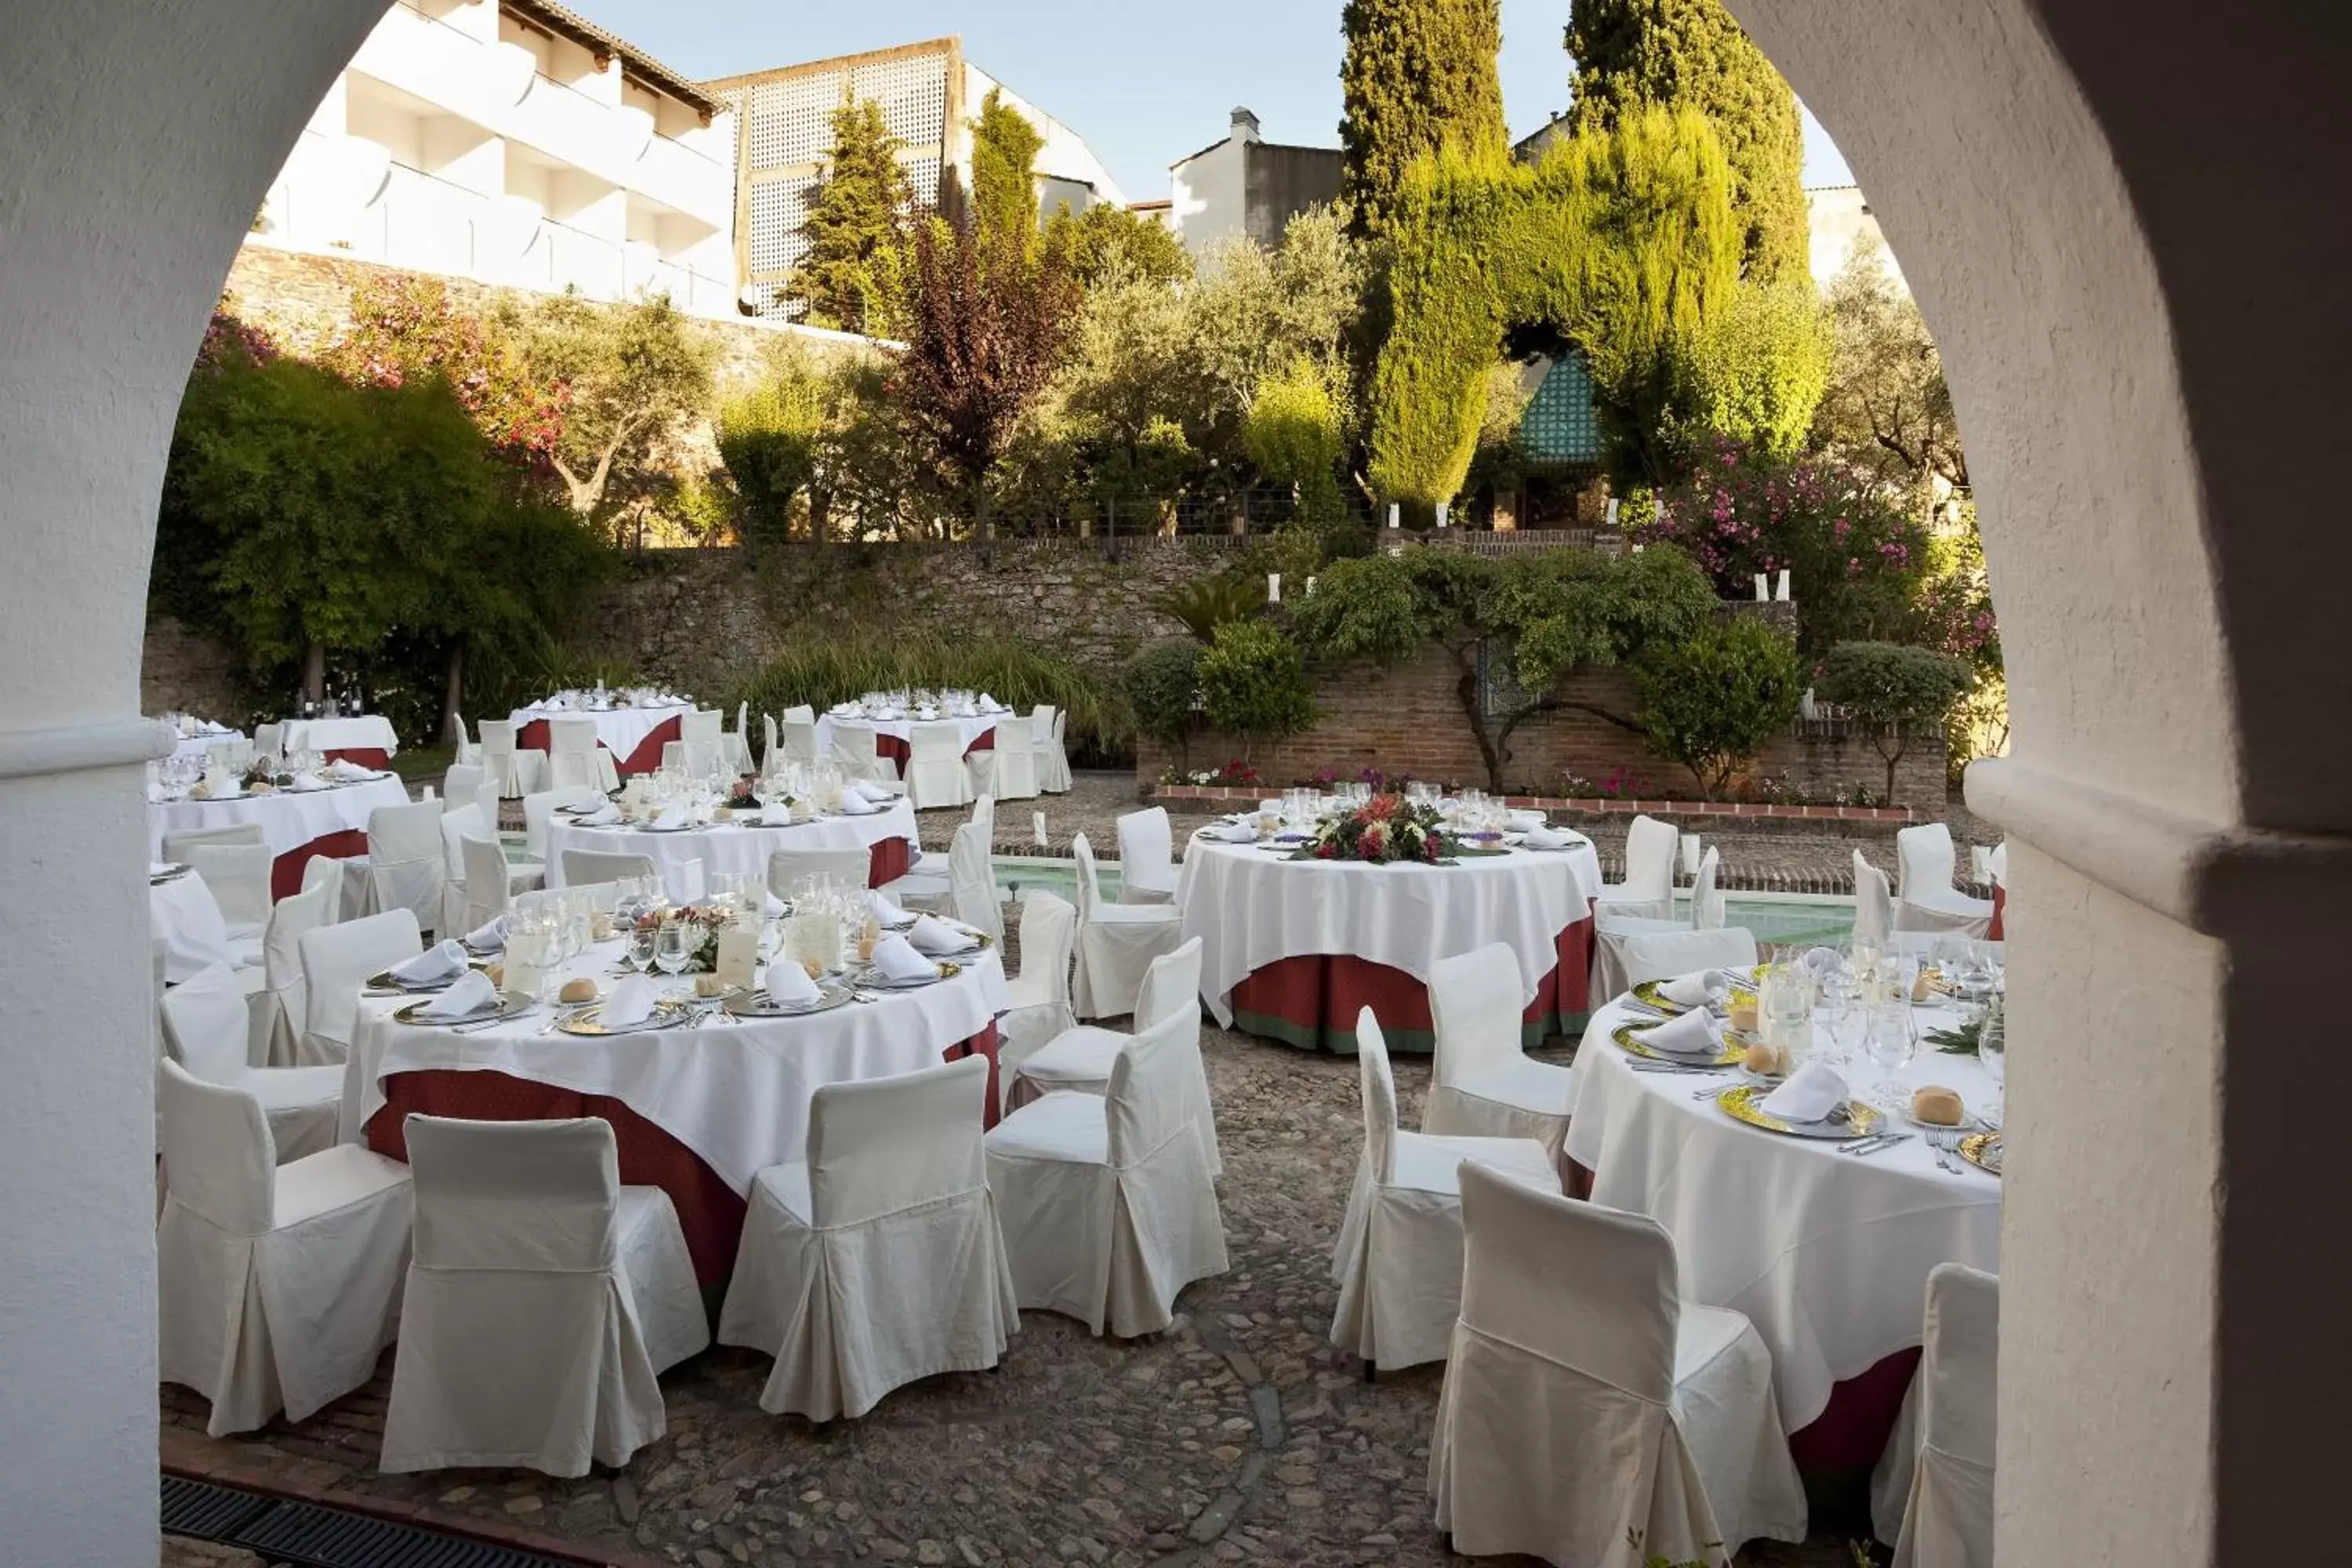 Banquet/Function facilities, Banquet Facilities in Parador de Guadalupe